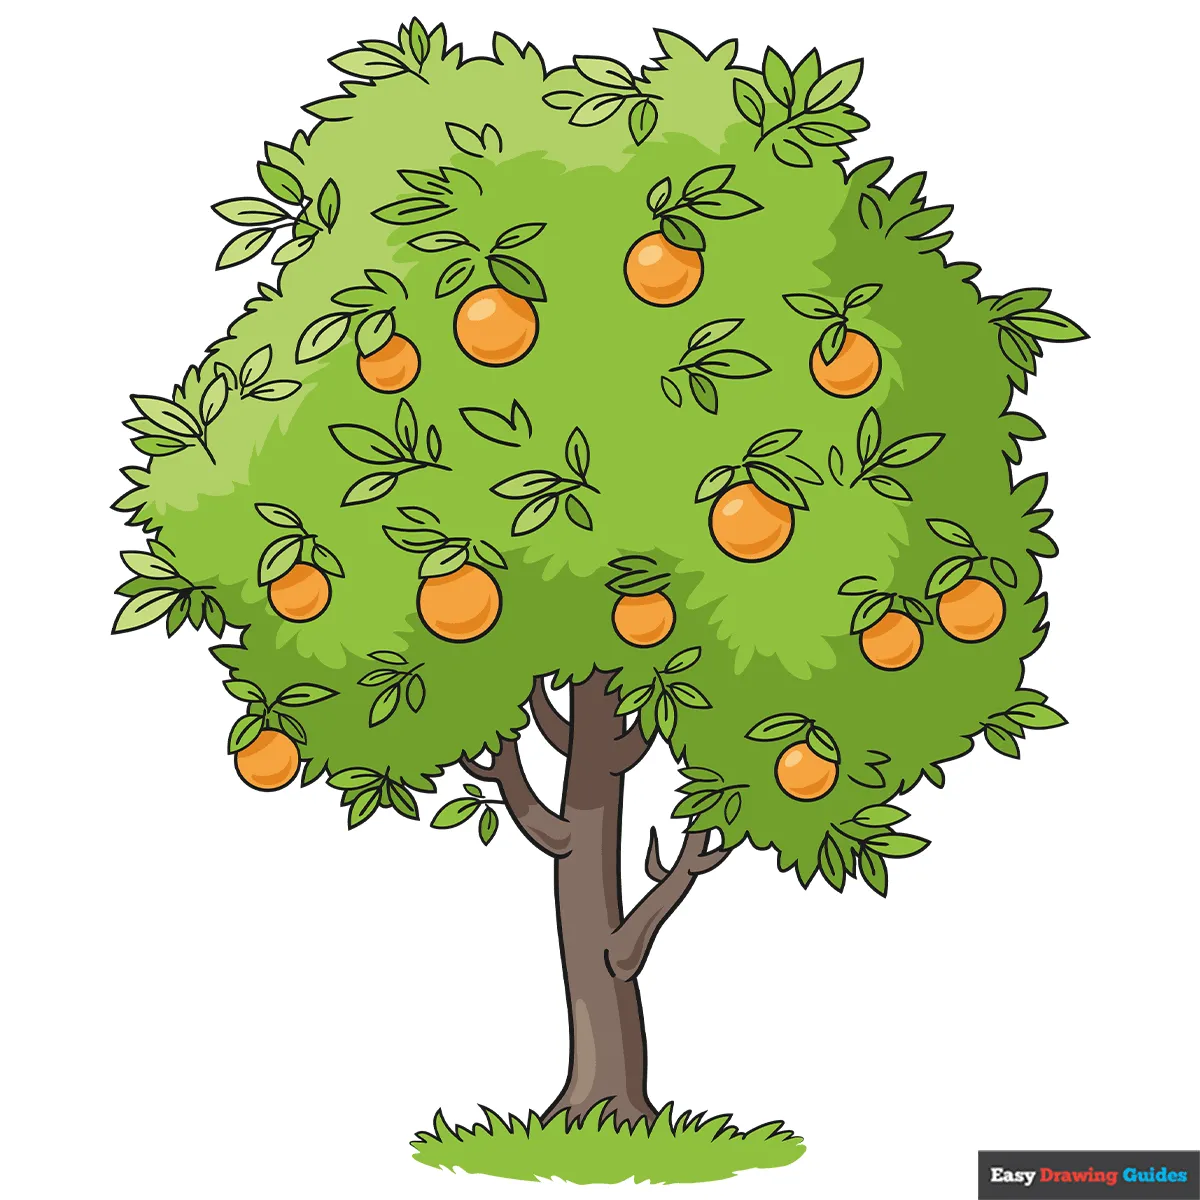 پرتقال دو رگه است و ربطی به کشور پرتقال نداره 1500